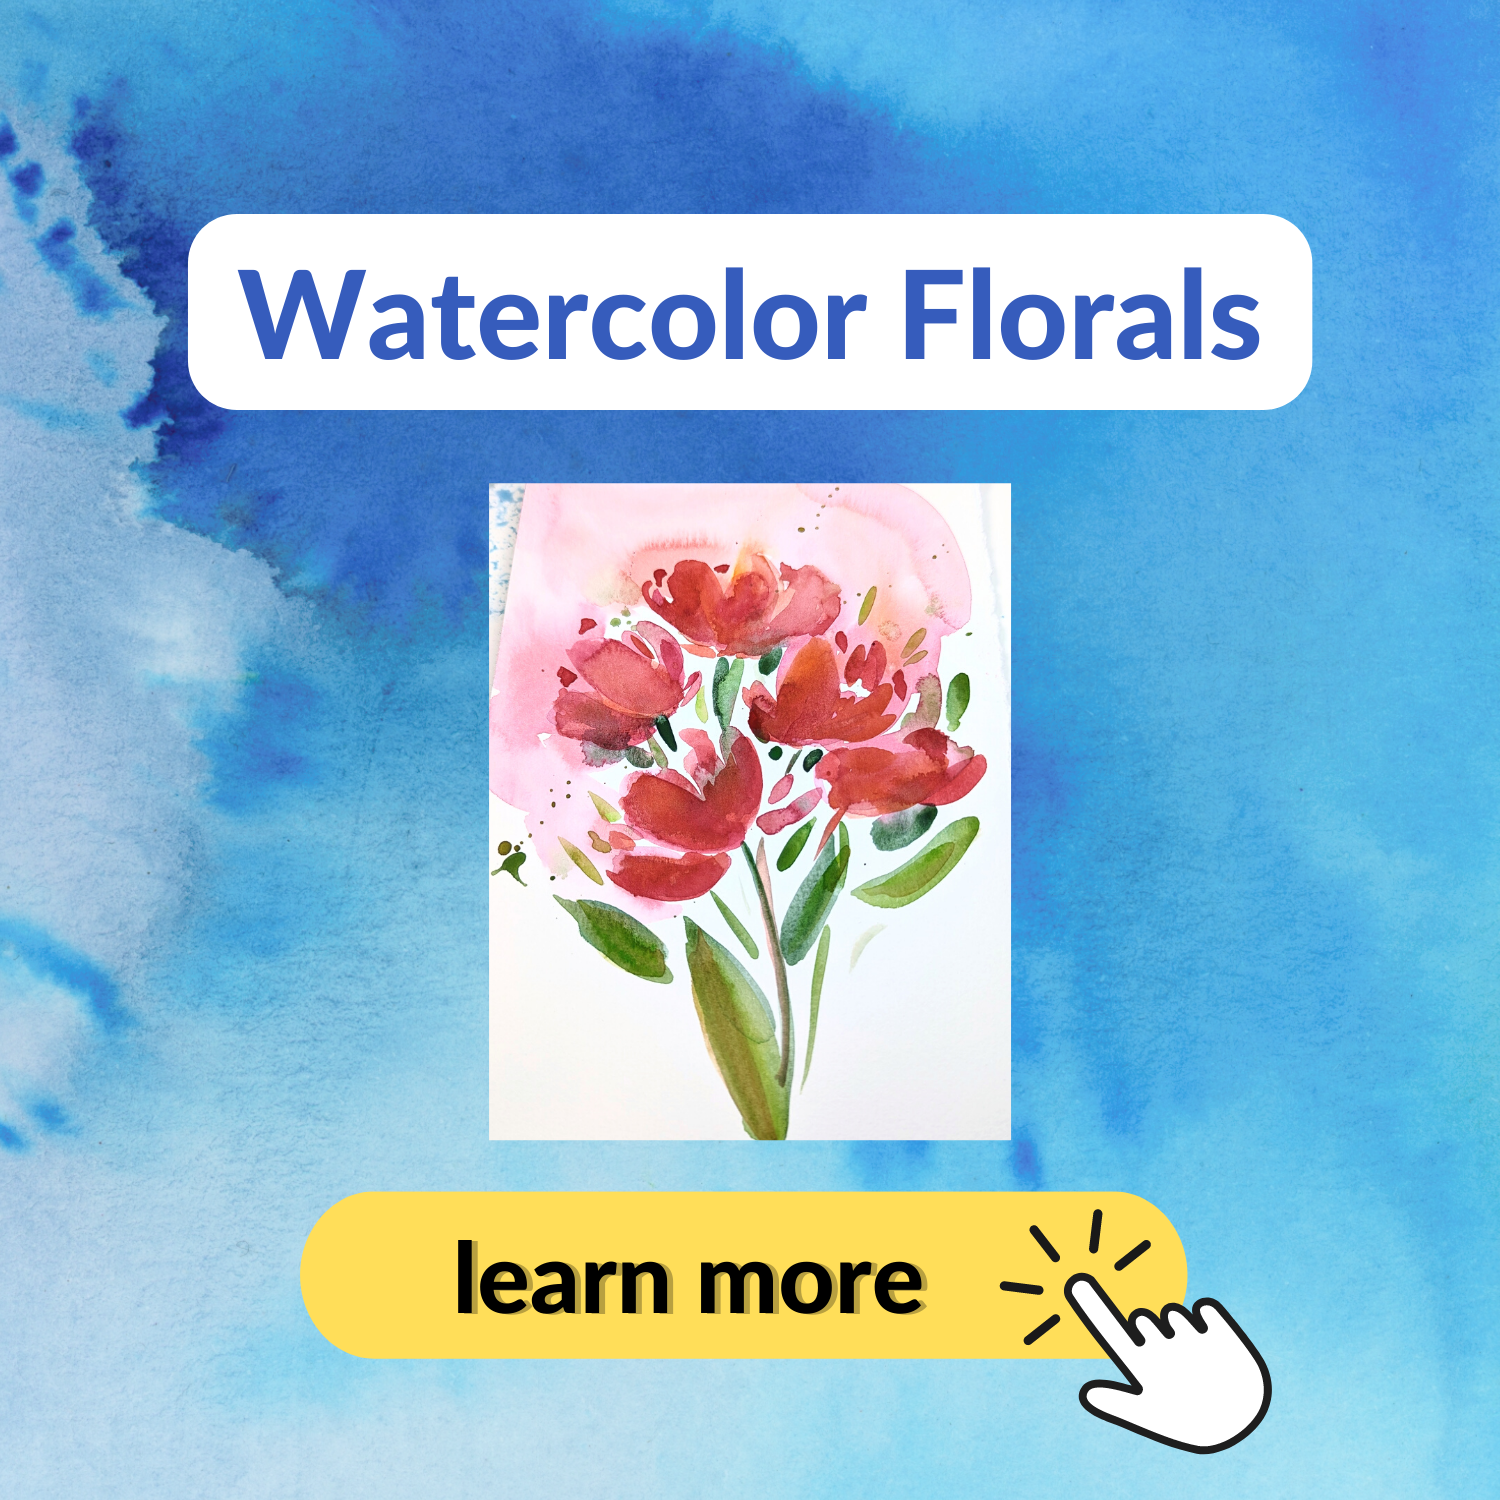 Watercolor Florals Online Course